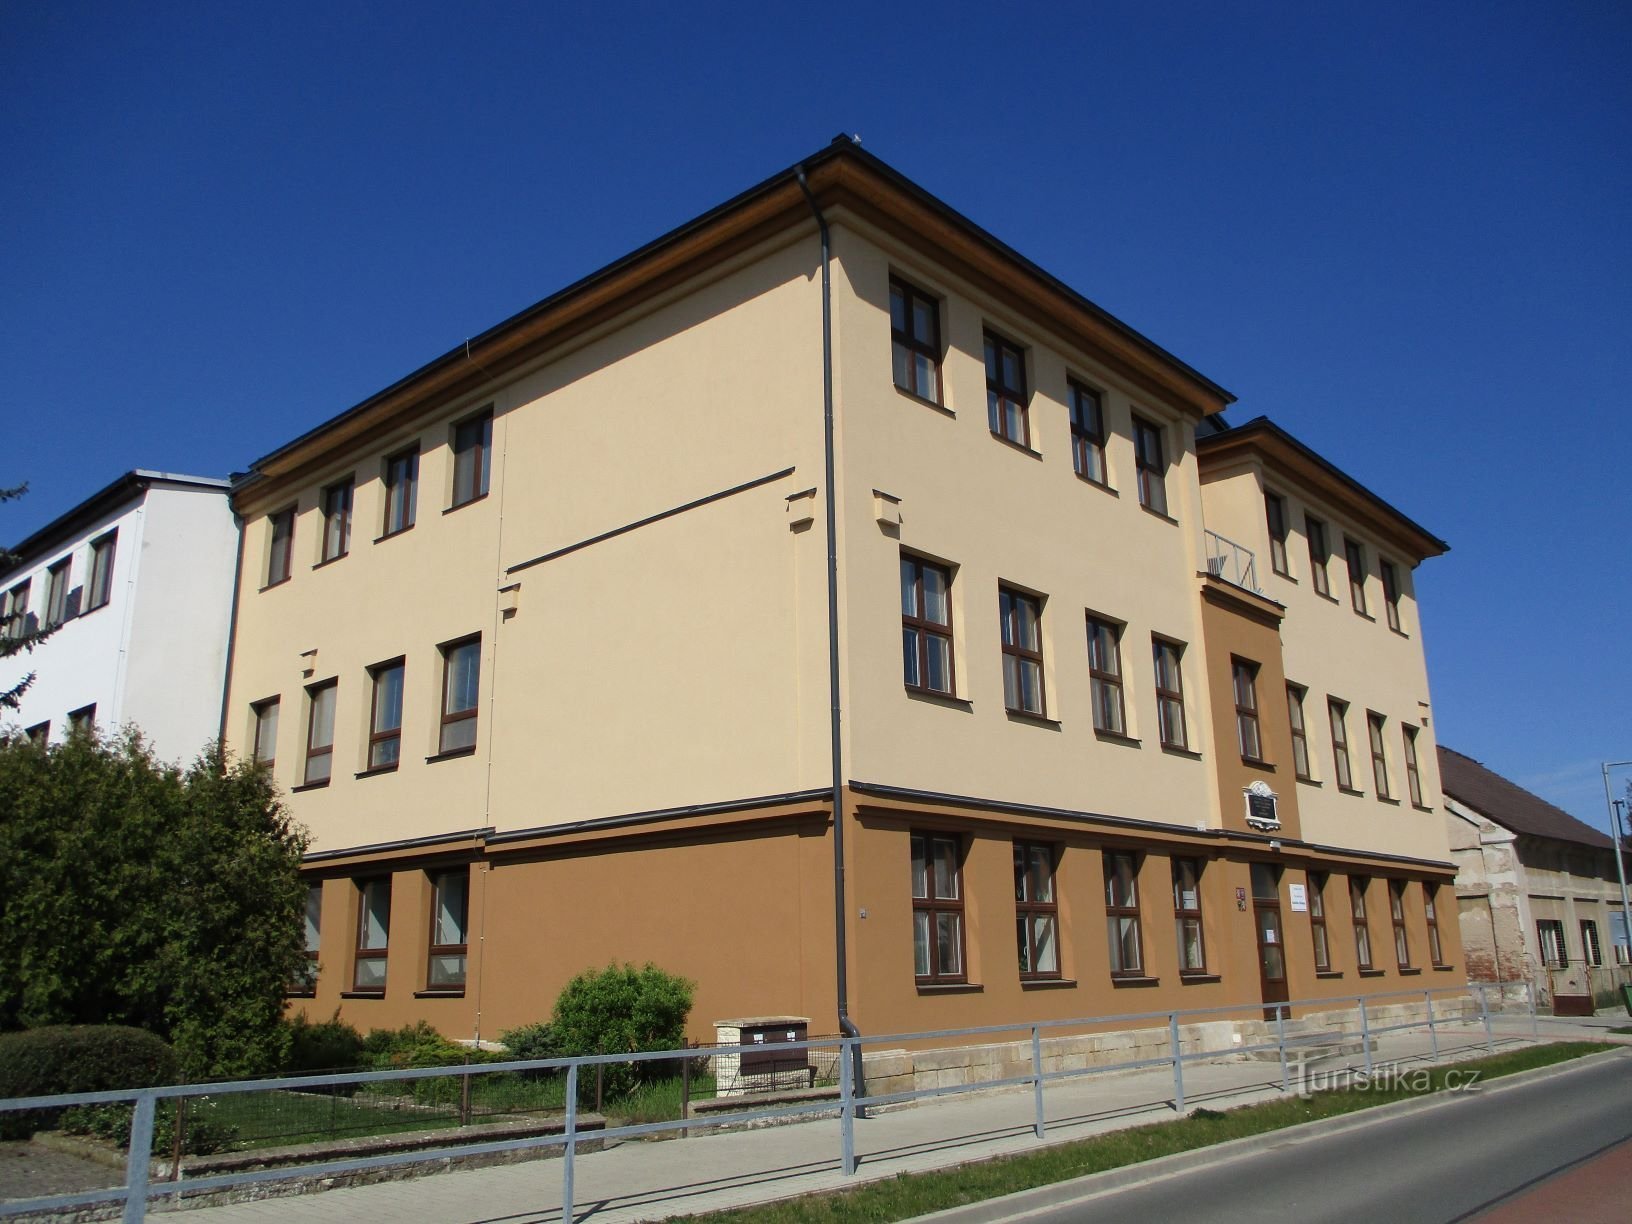 Школа після розширення (Ошице, 18.4.2020)